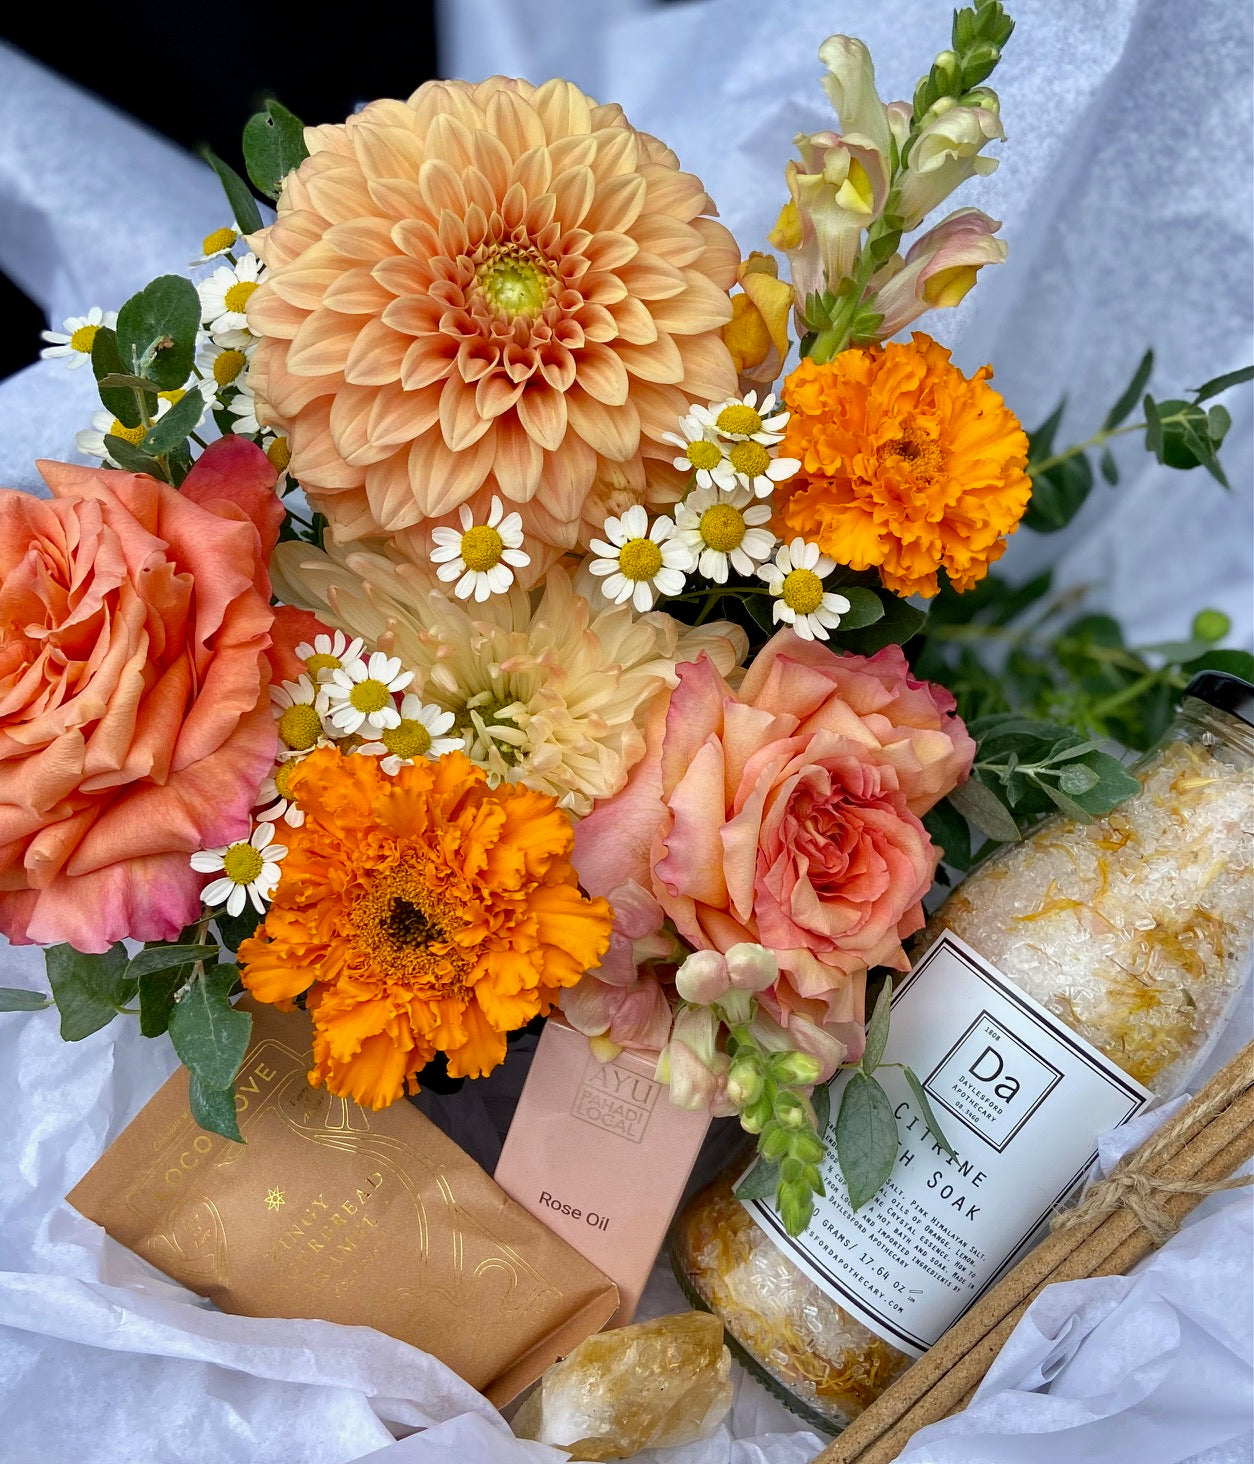 The Sun Goddess Gift Box - Haven Botanical - Loco love - Ayu rose oil